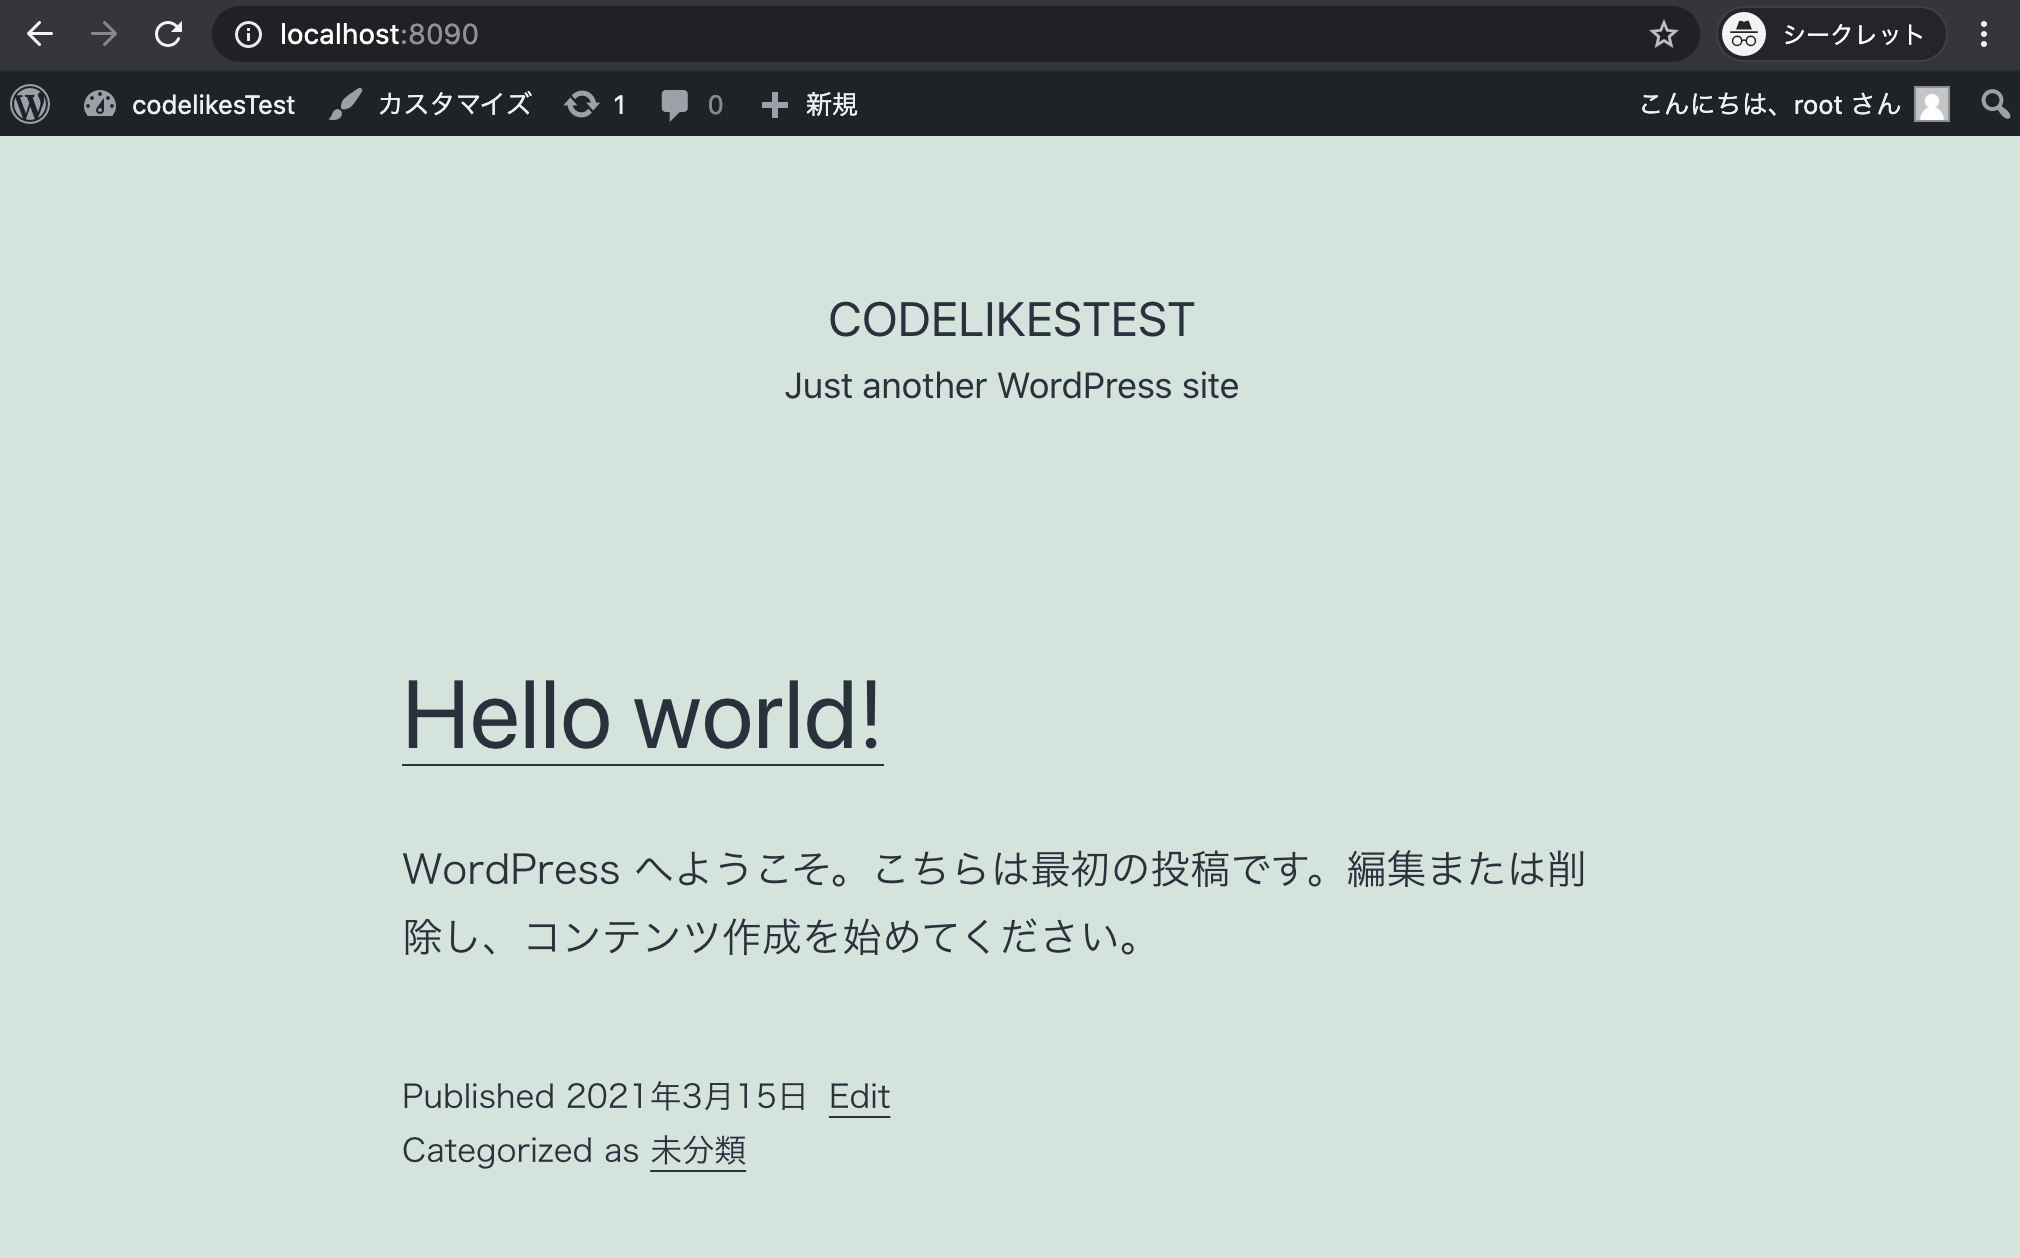 Dockerで作成したWordpressのトップページ確認